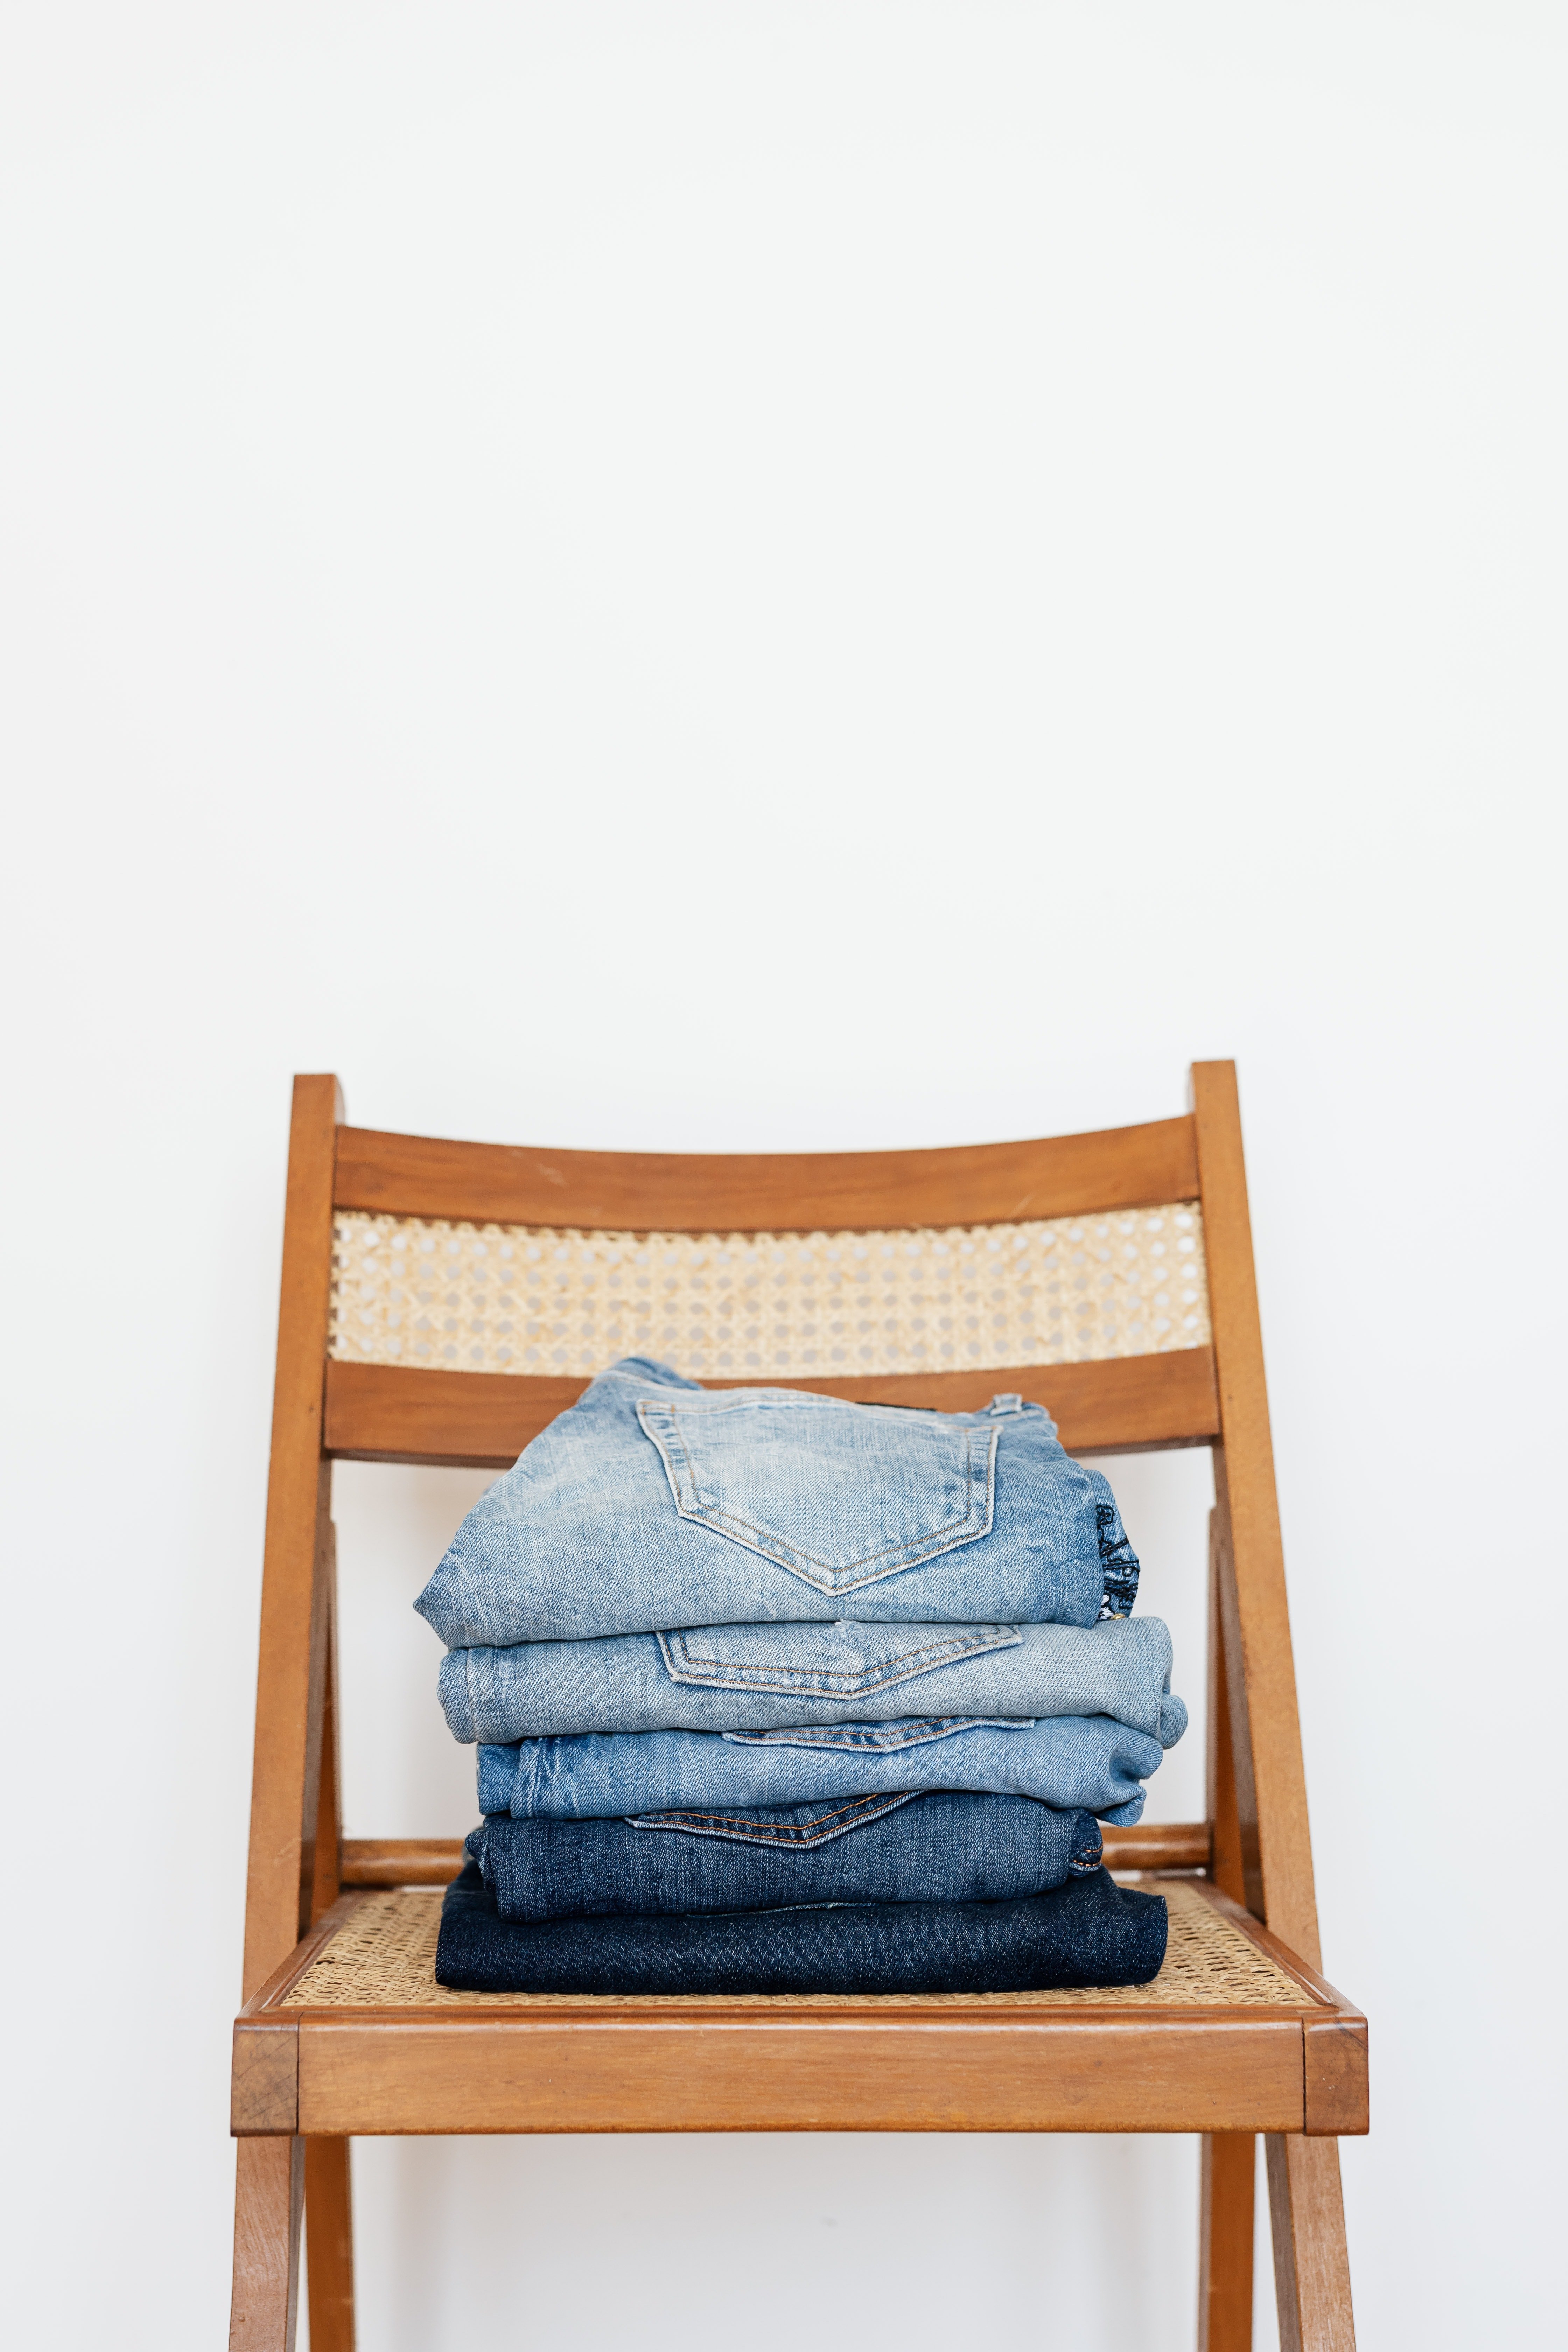 Des jeans ancien. | Photo : Pexels